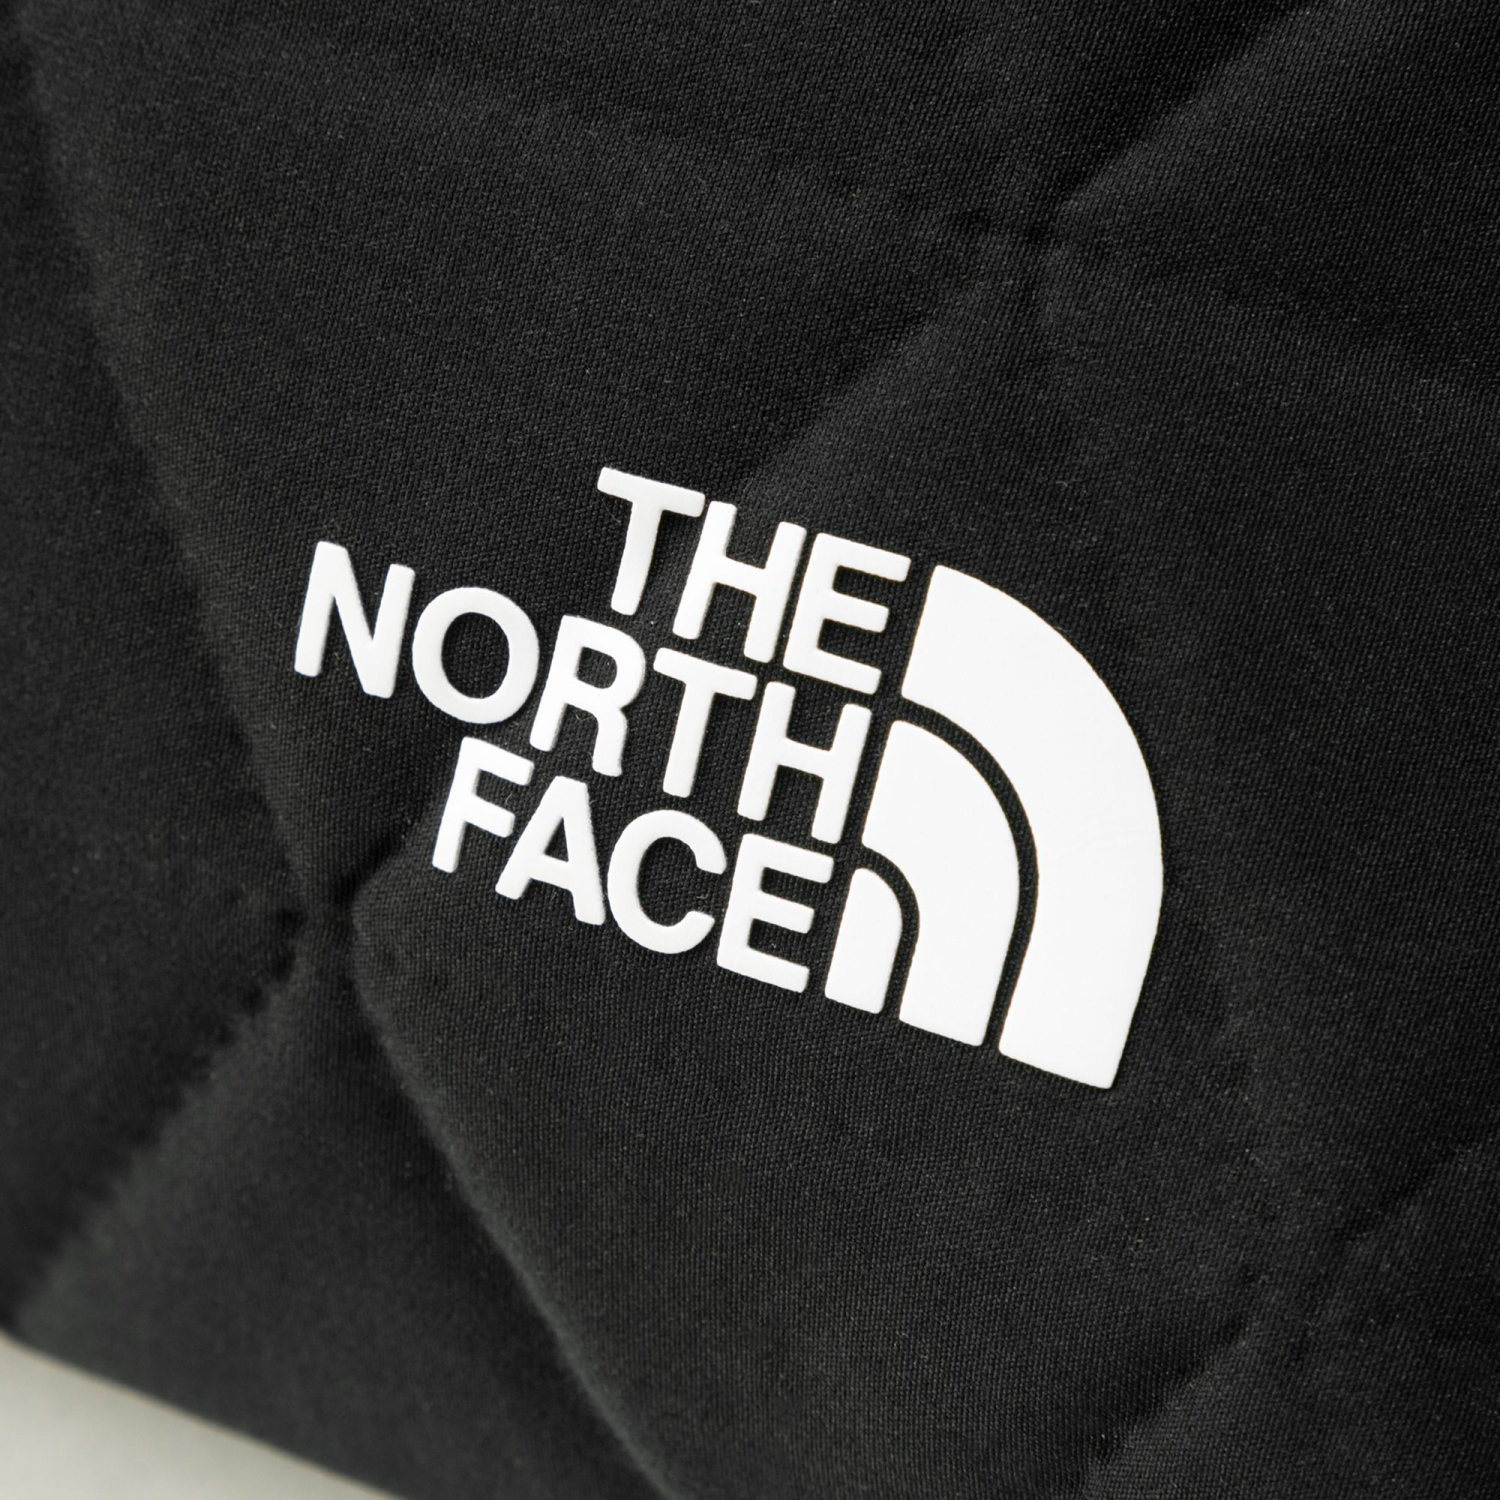 THE NORTH FACE(ザ・ノースフェイス) NM32356 ジオフェイスポーチ